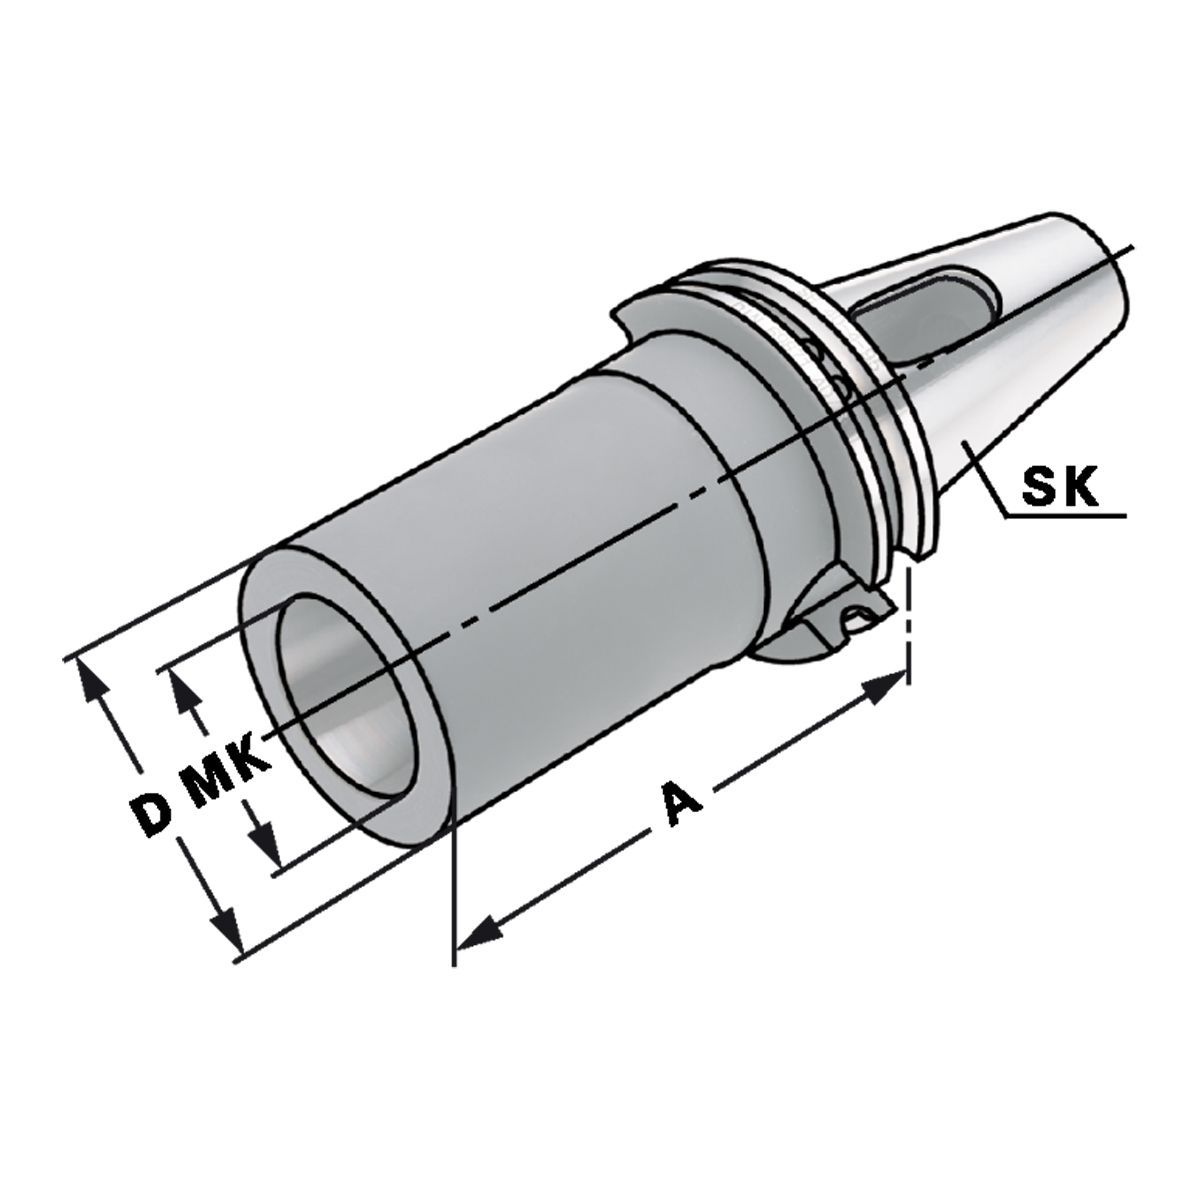 Zwischenhülse SK 40-1-50 für MK mit Austreiblappen DIN 6383